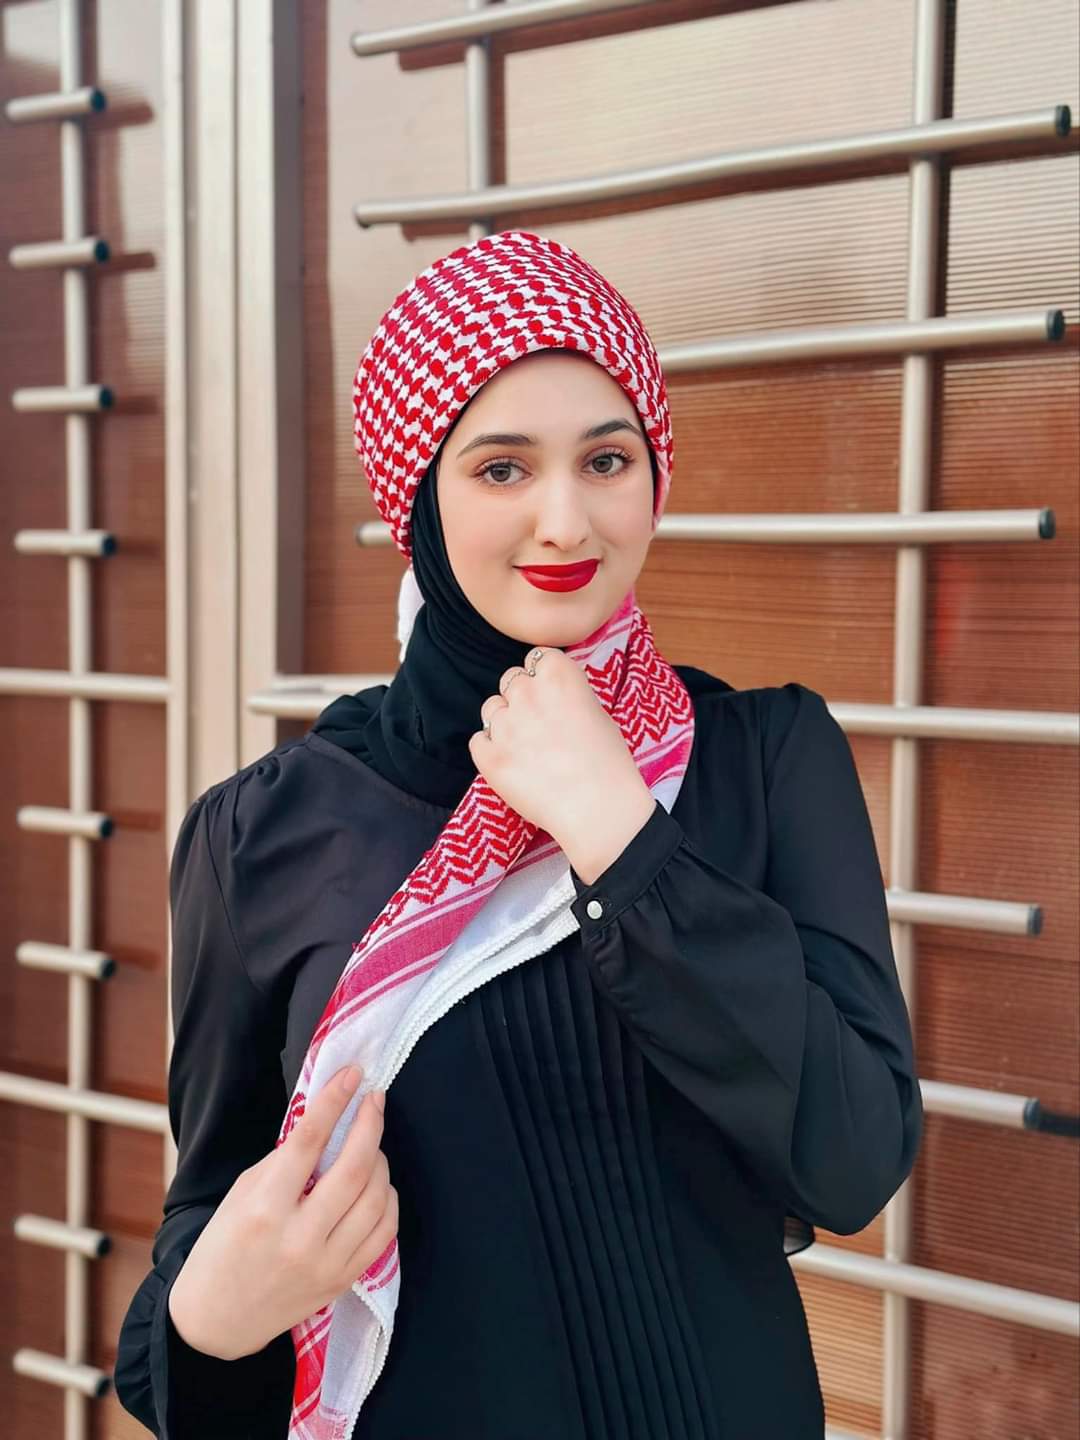 جوهرة العرب الإخباري يهنئ الزميلة رولا أبو دلو بمناسبة عيد ميلادها الميمون